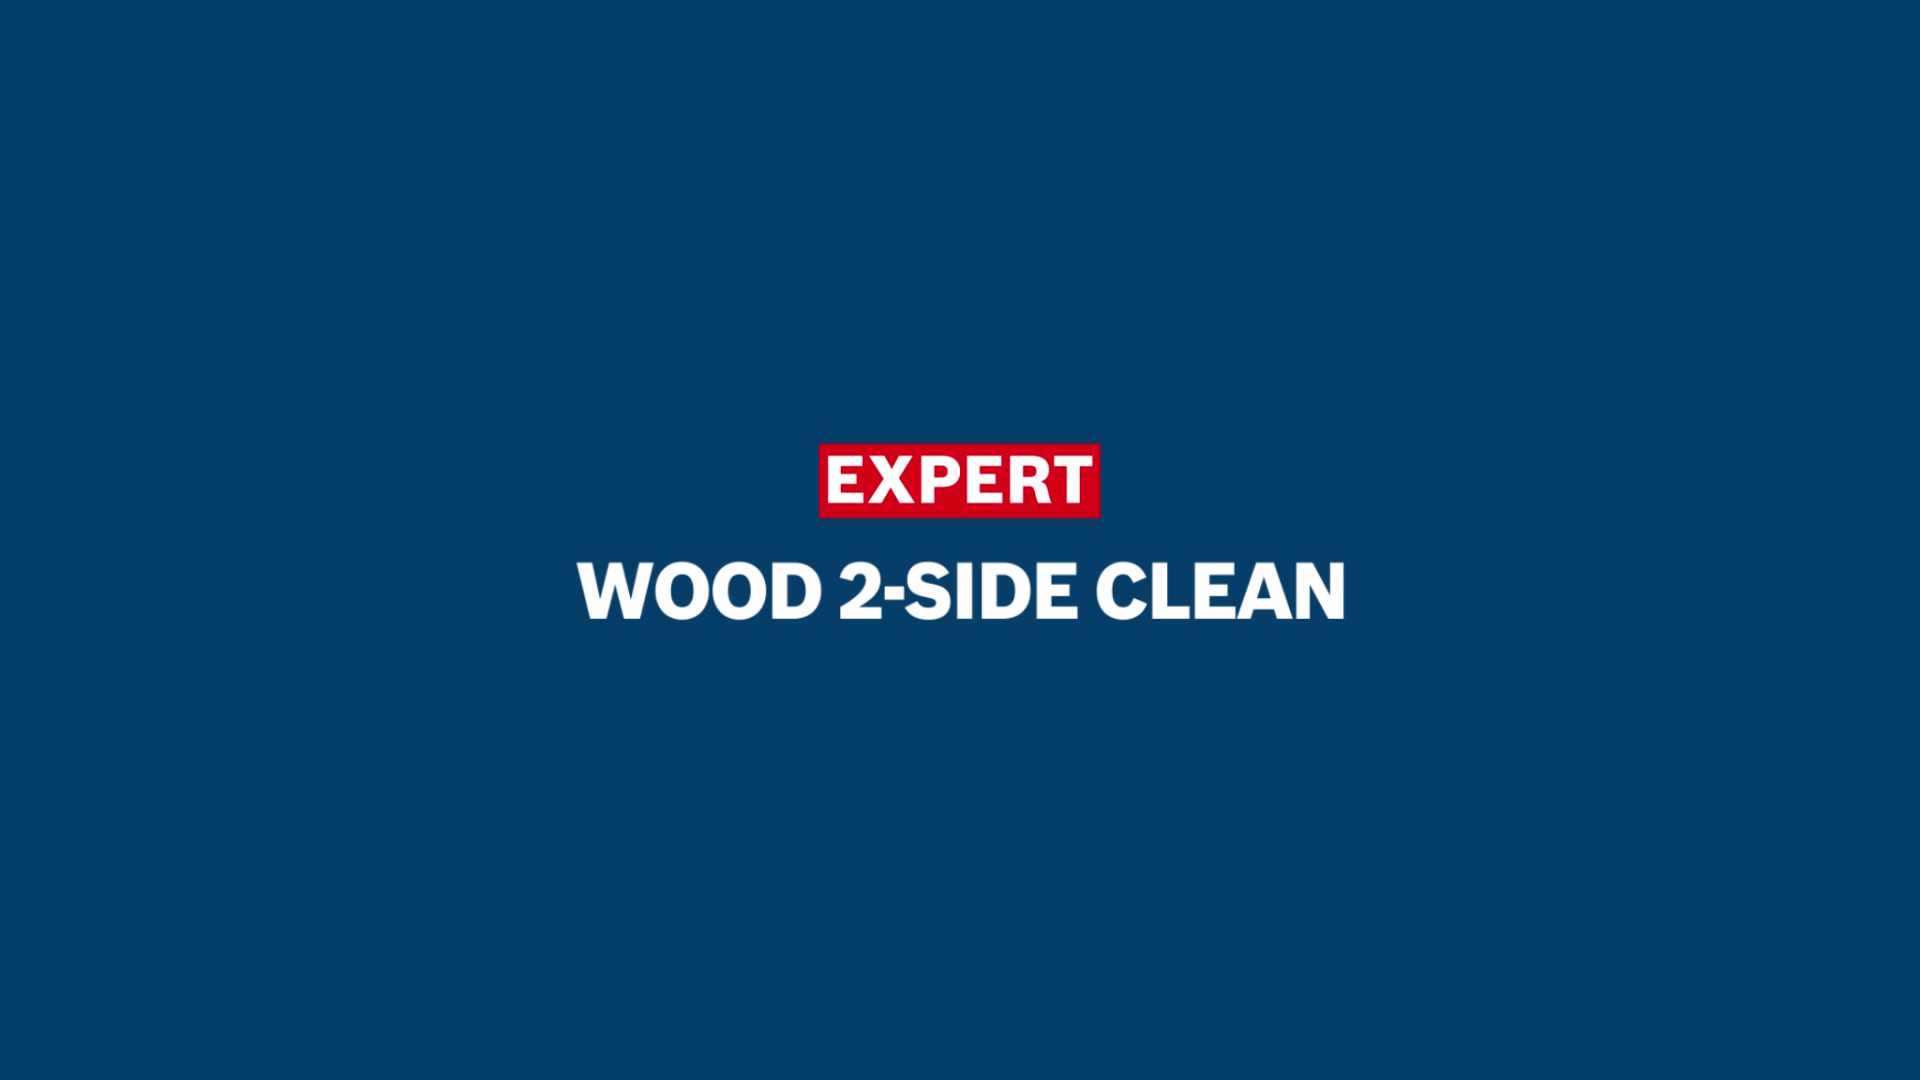 EXPERT Wood 2-side clean